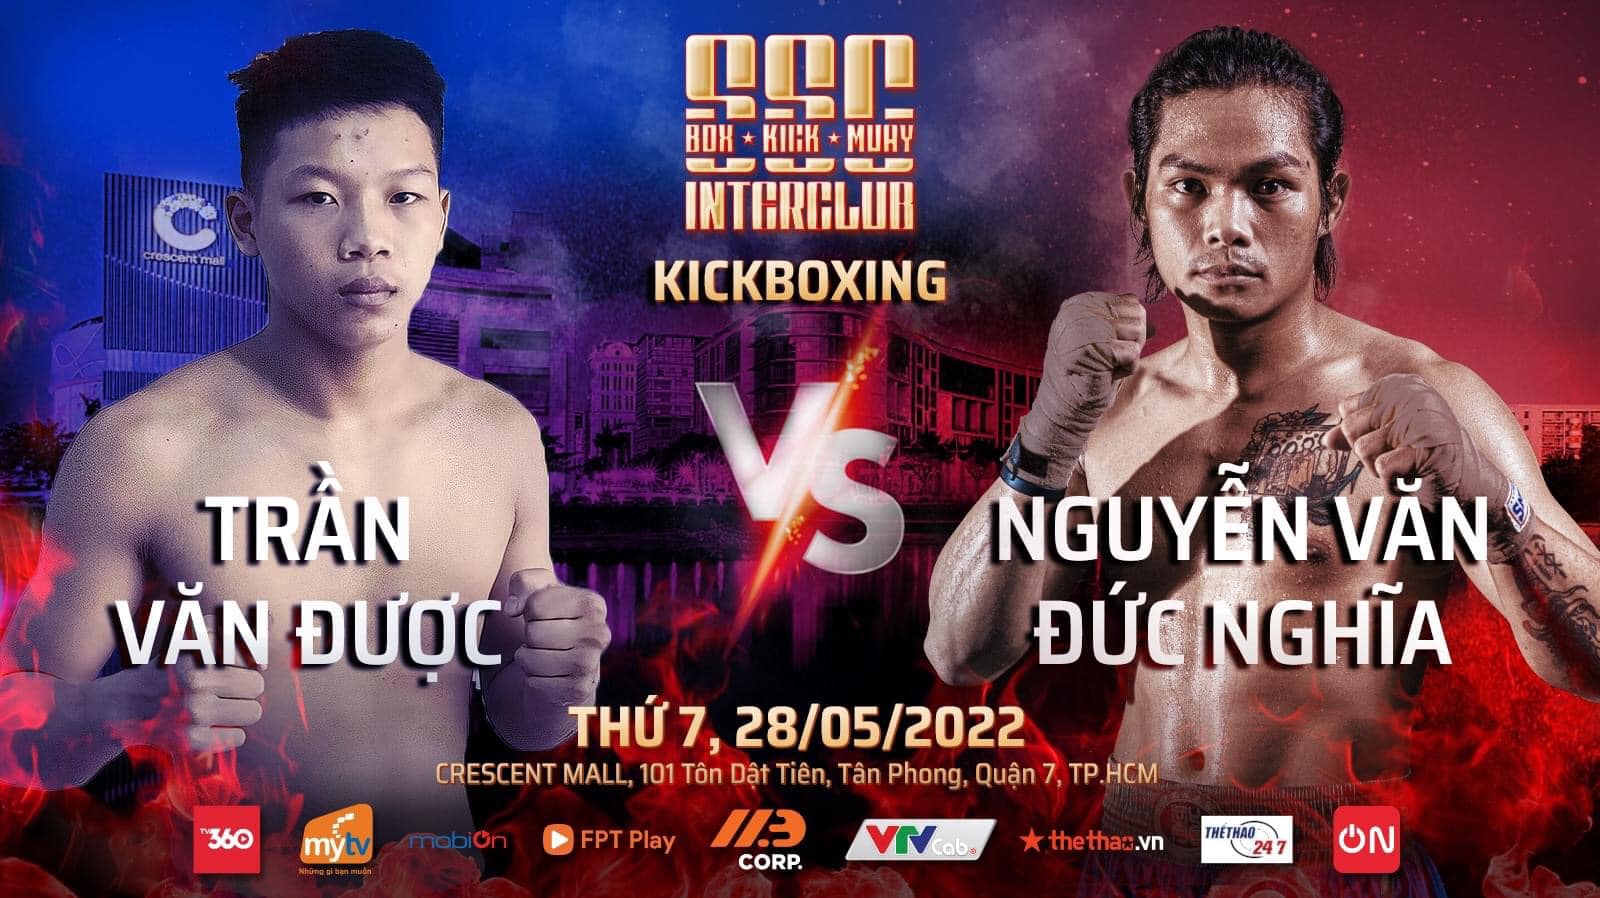 Sự kiện 3 môn võ Boxing, Kickboxing, Muay Thái tổ chức ở TPHCM ngày 28/5 - Ảnh 12